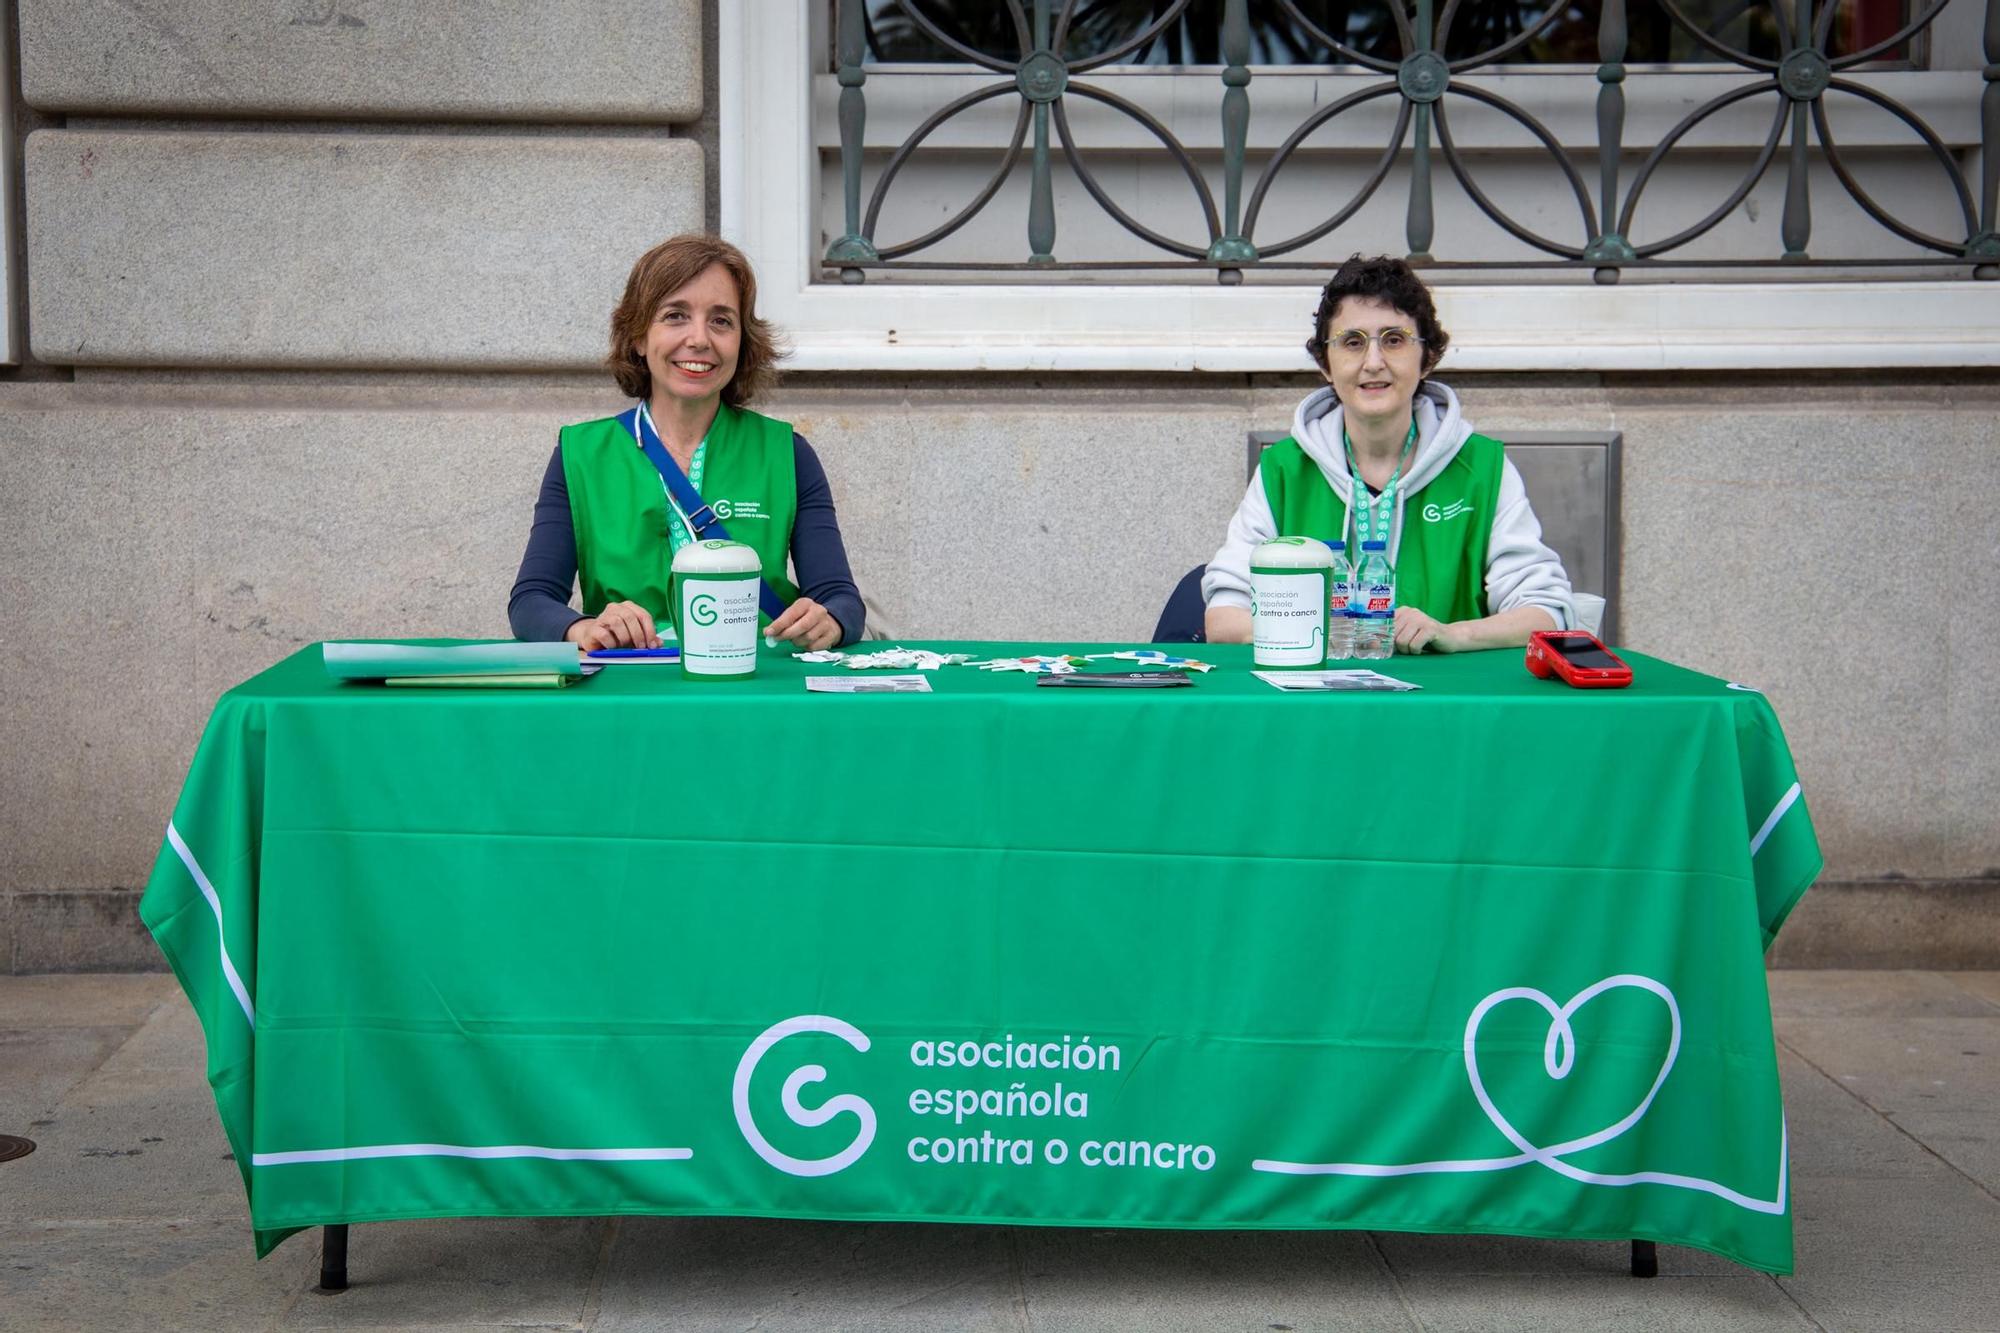 La Asociación contra el Cáncer sale en A Coruña a recaudar fondos para investigación oncológica